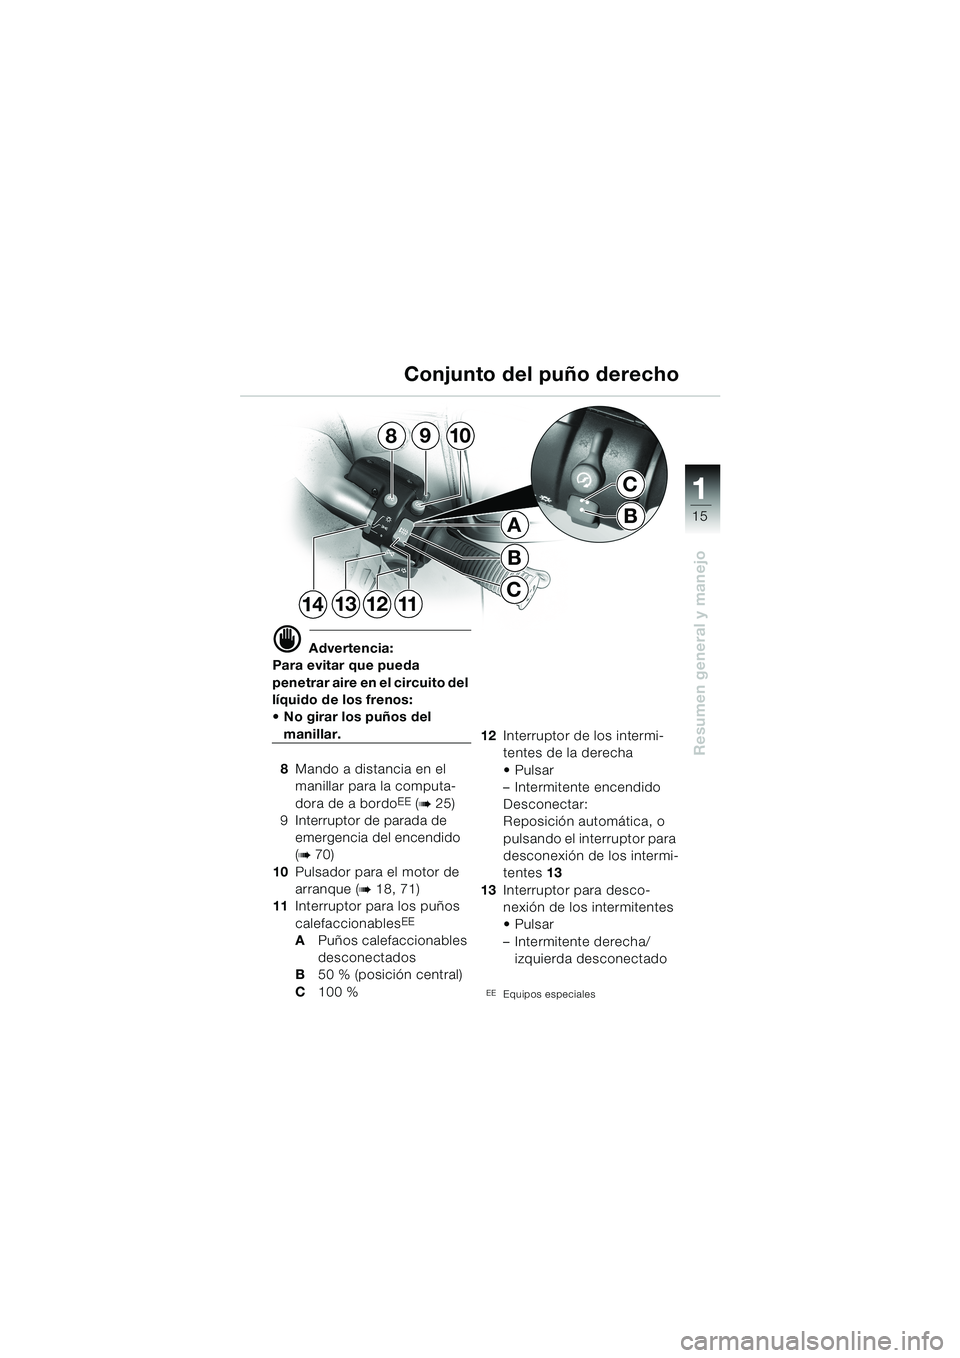 BMW MOTORRAD K 1200 LT 2002  Manual de instrucciones (in Spanish) 15
Resumen general y manejo
1
Conjunto del puño derecho
d Advertencia:
Para evitar que pueda 
penetrar aire en el circuito del 
líquido de los frenos: 
No girar los puños del 
manillar.
8Mando a d